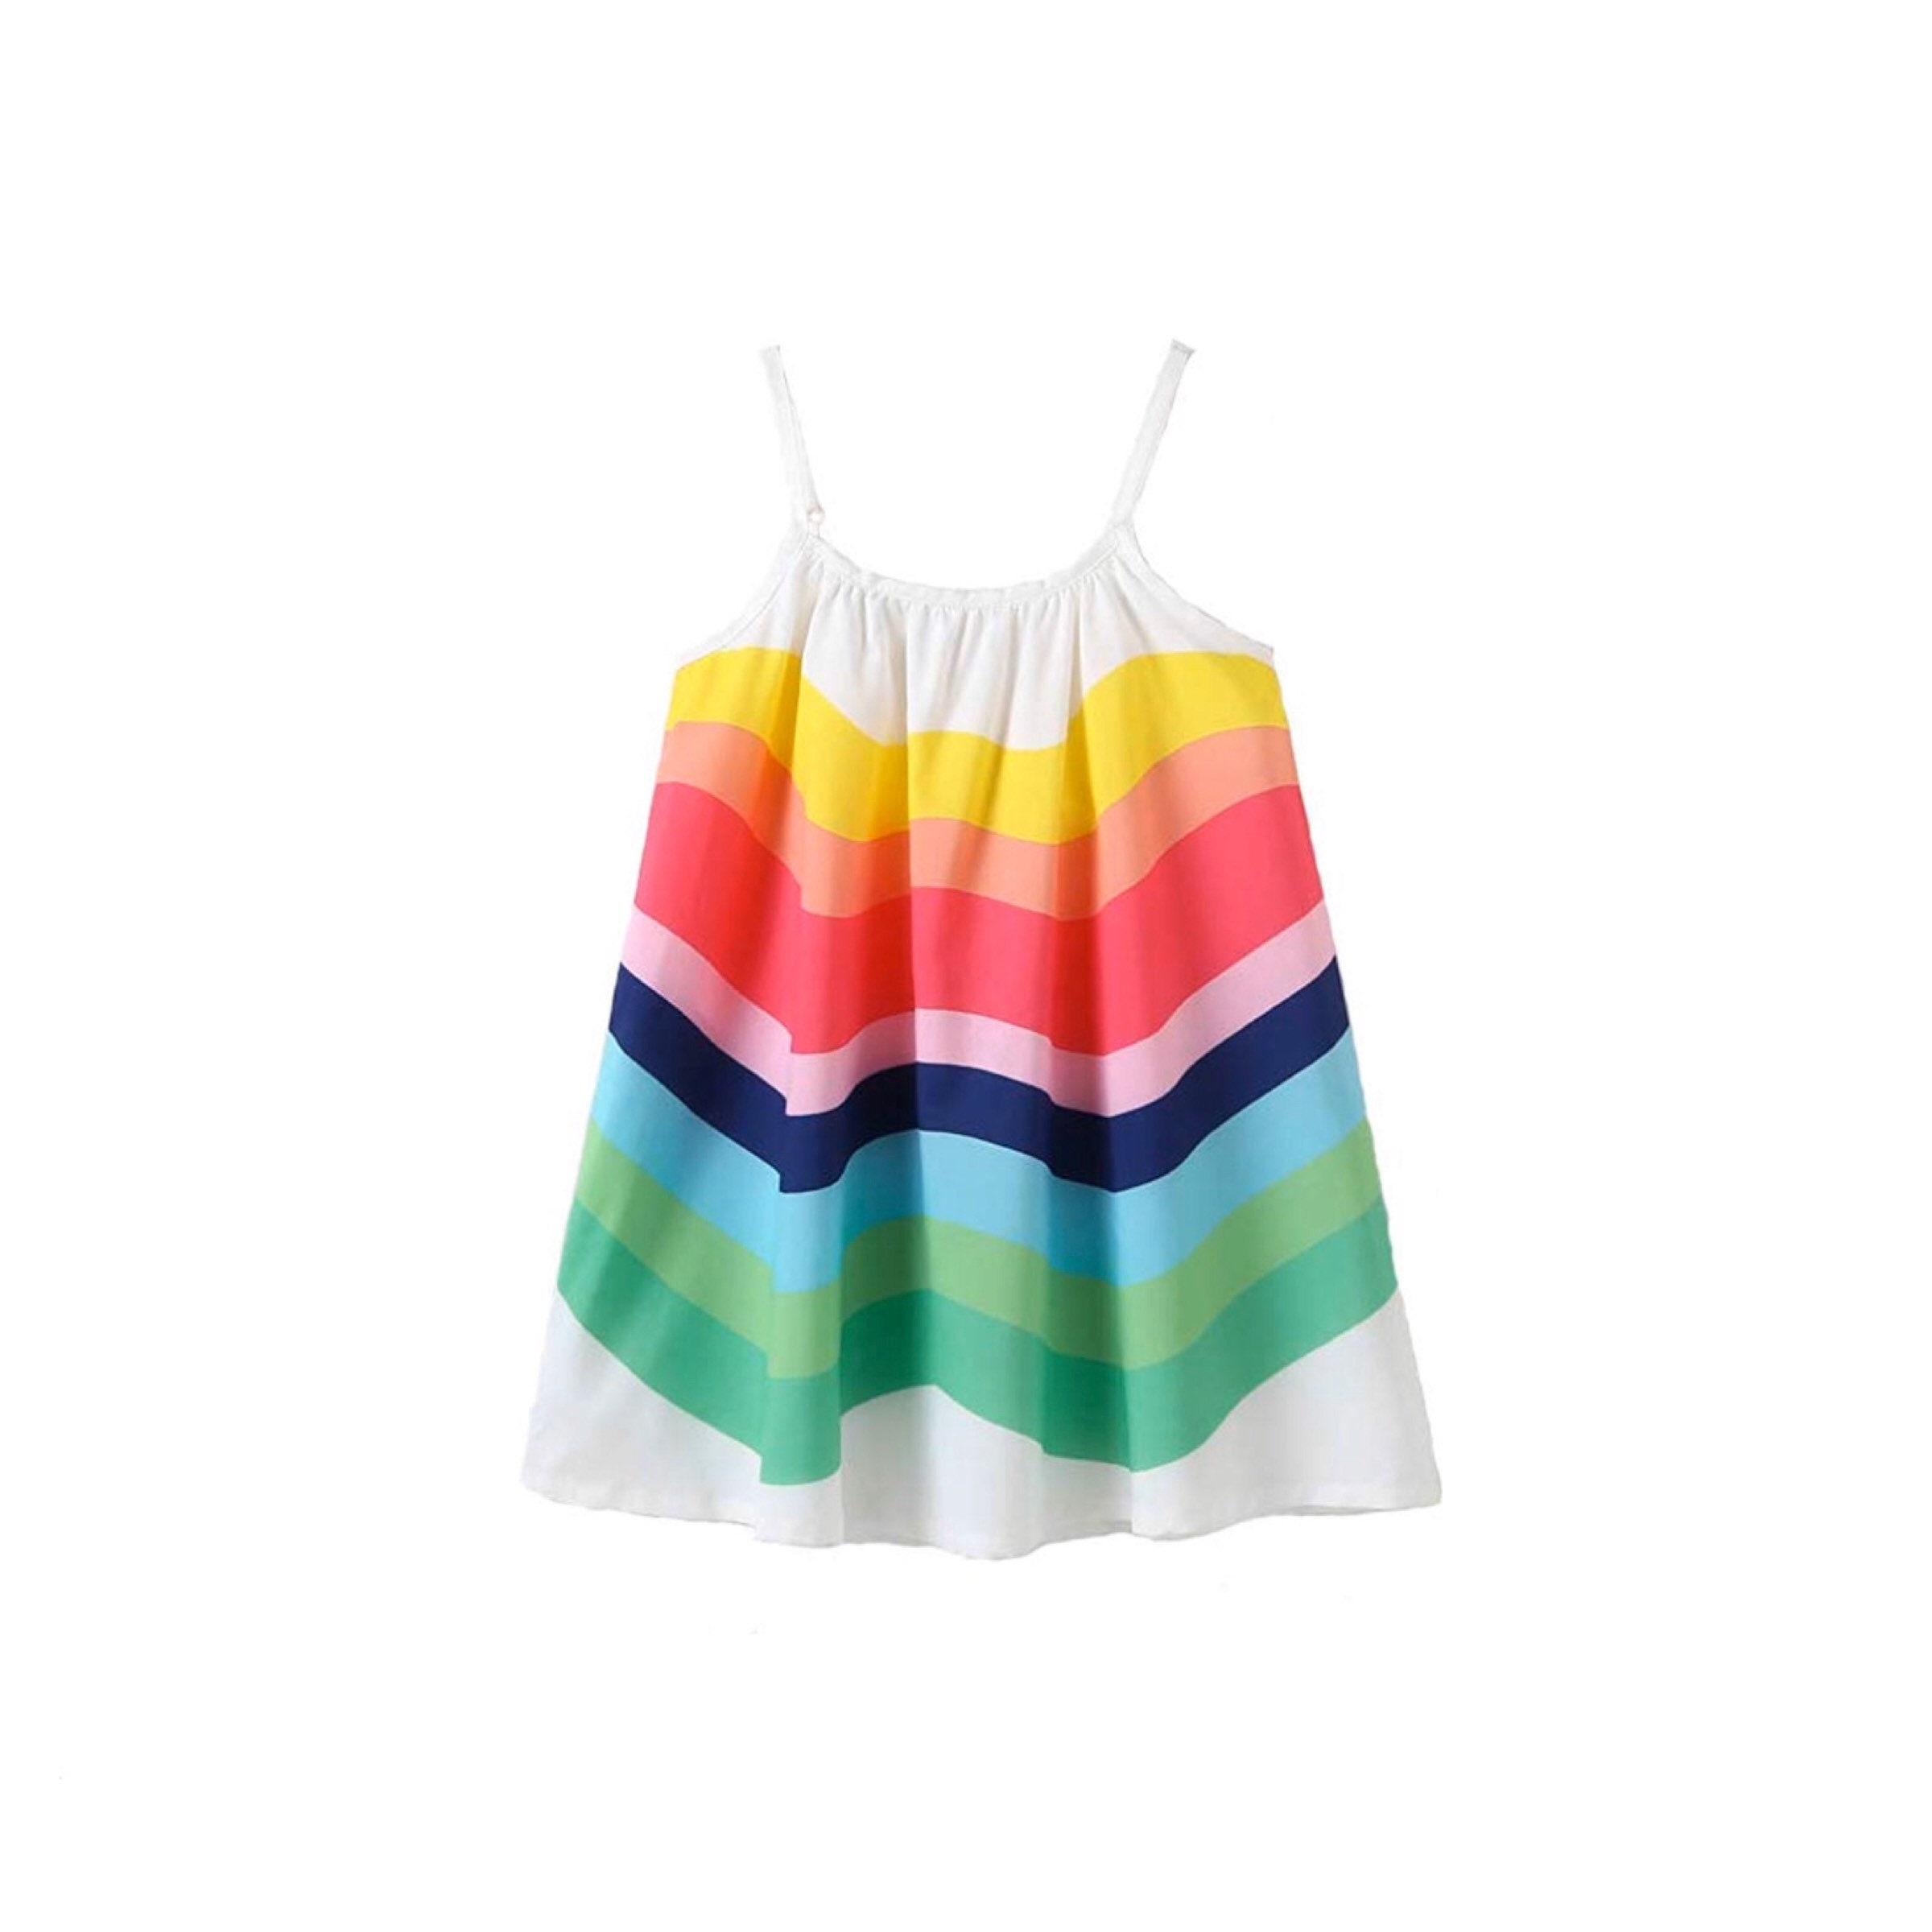 Rainbow dress for girls little girls clothing little girls | Etsy